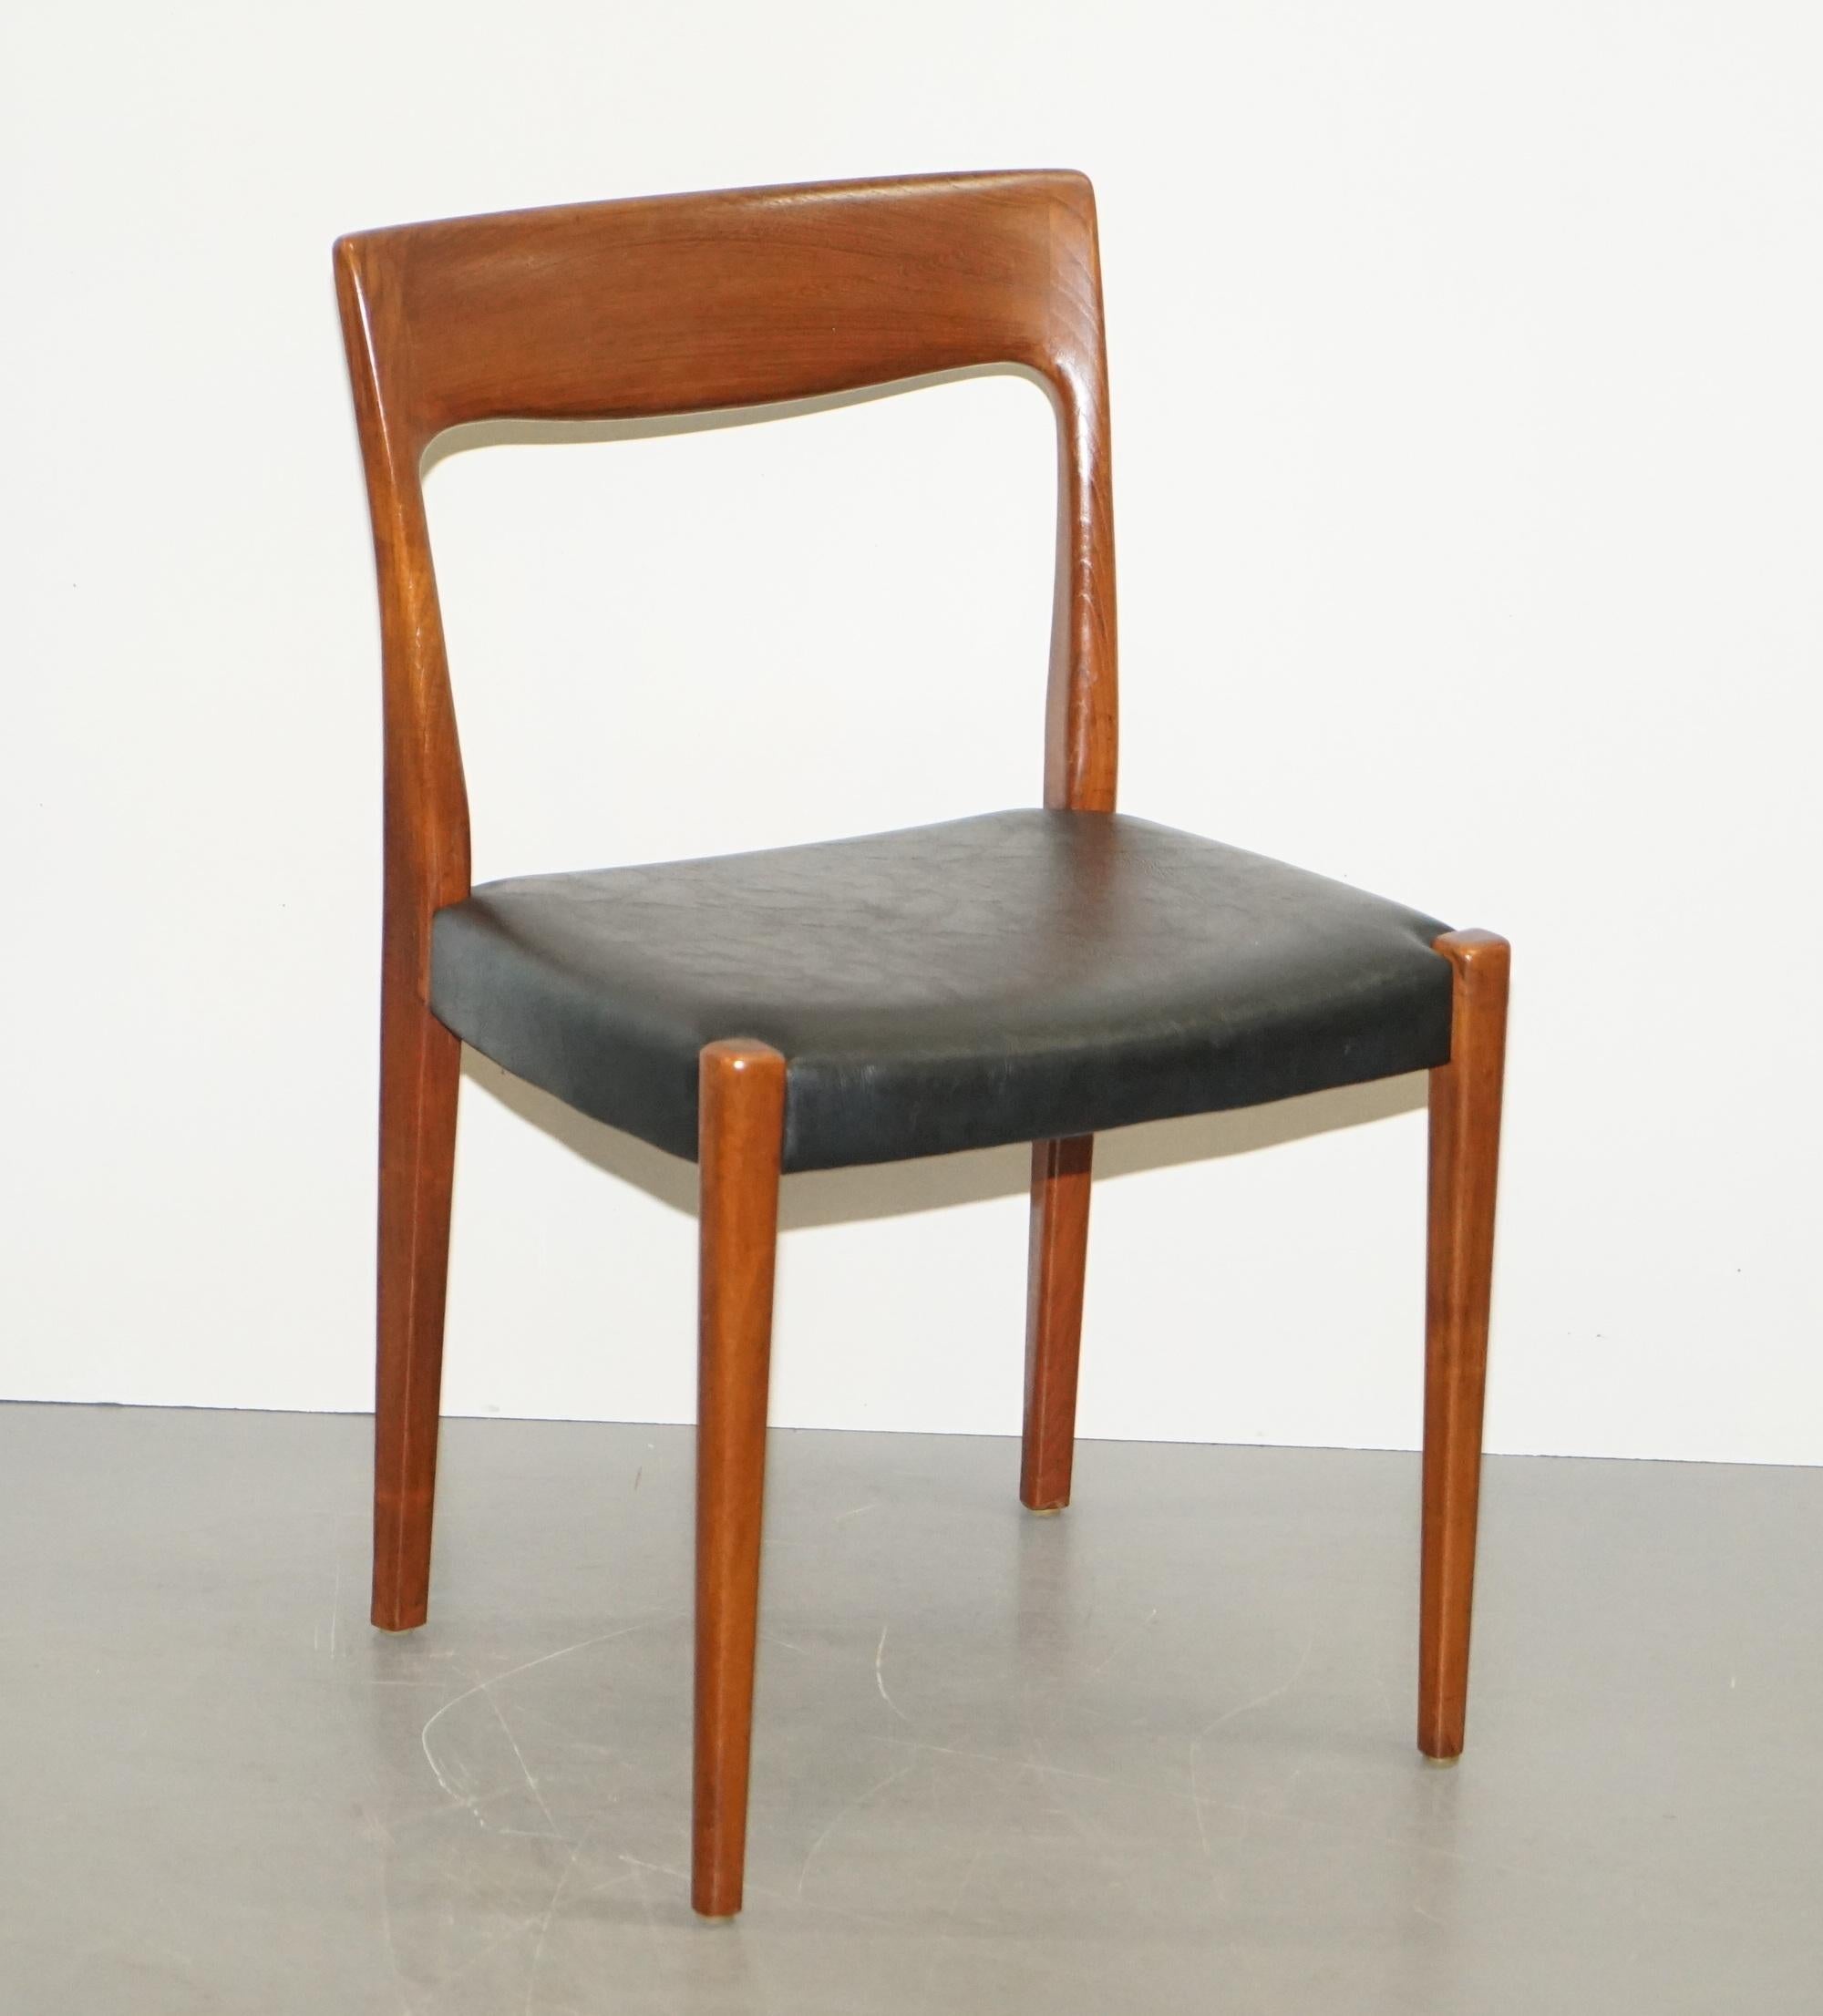 Nous sommes ravis d'offrir à la vente cette belle série de quatre chaises de salle à manger en teck danois Svegards Markaryd, entièrement estampillées.

Ces chaises ont ces belles lignes que l'on ne trouve que dans les chaises danoises de très